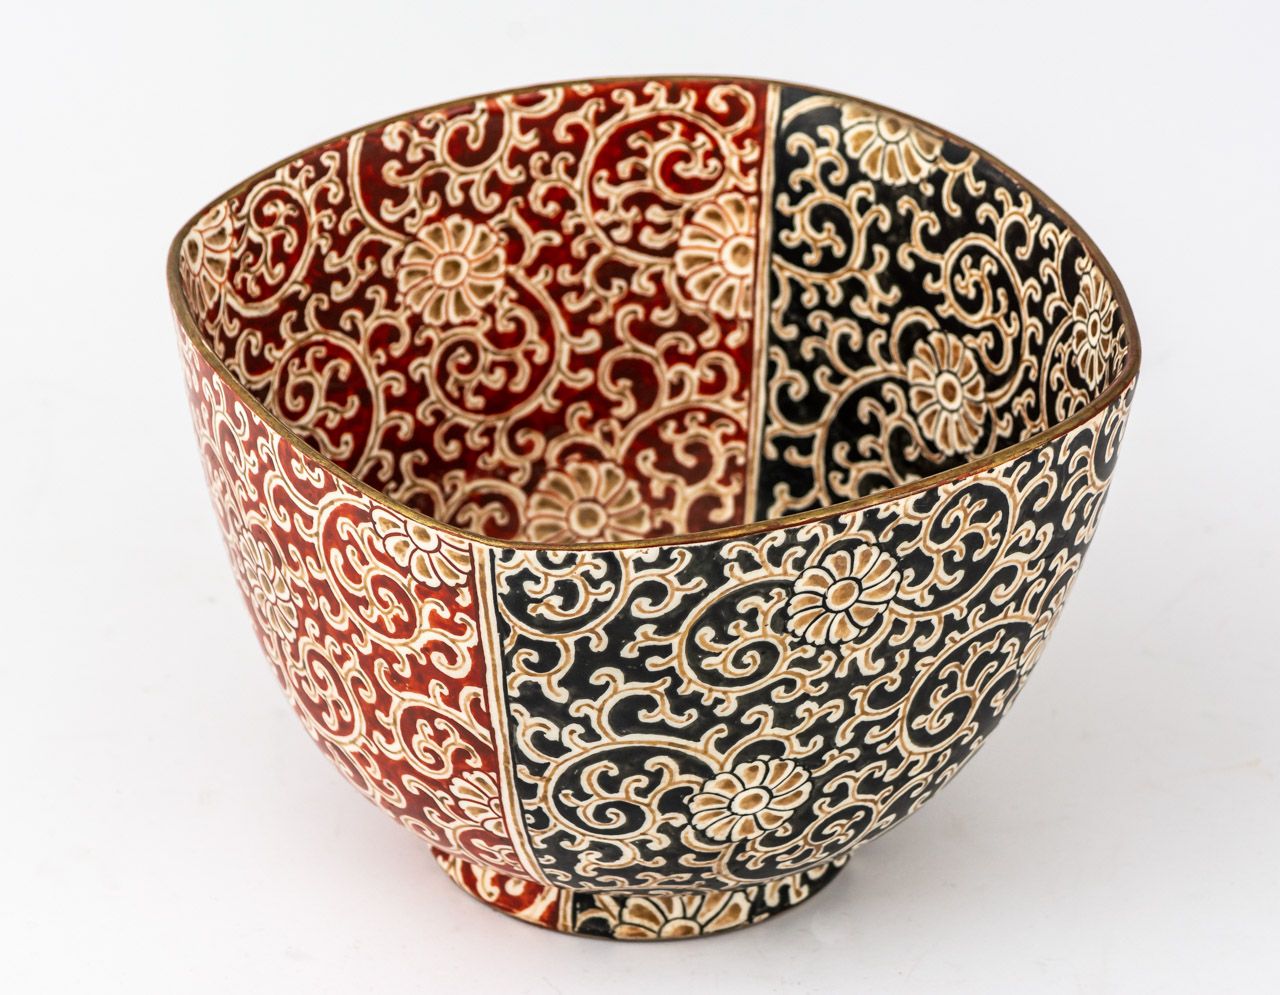 SCHWARZ-ROTE SCHALE Japón, cerámica Kutani

18 x17,5 x 12,5 cm